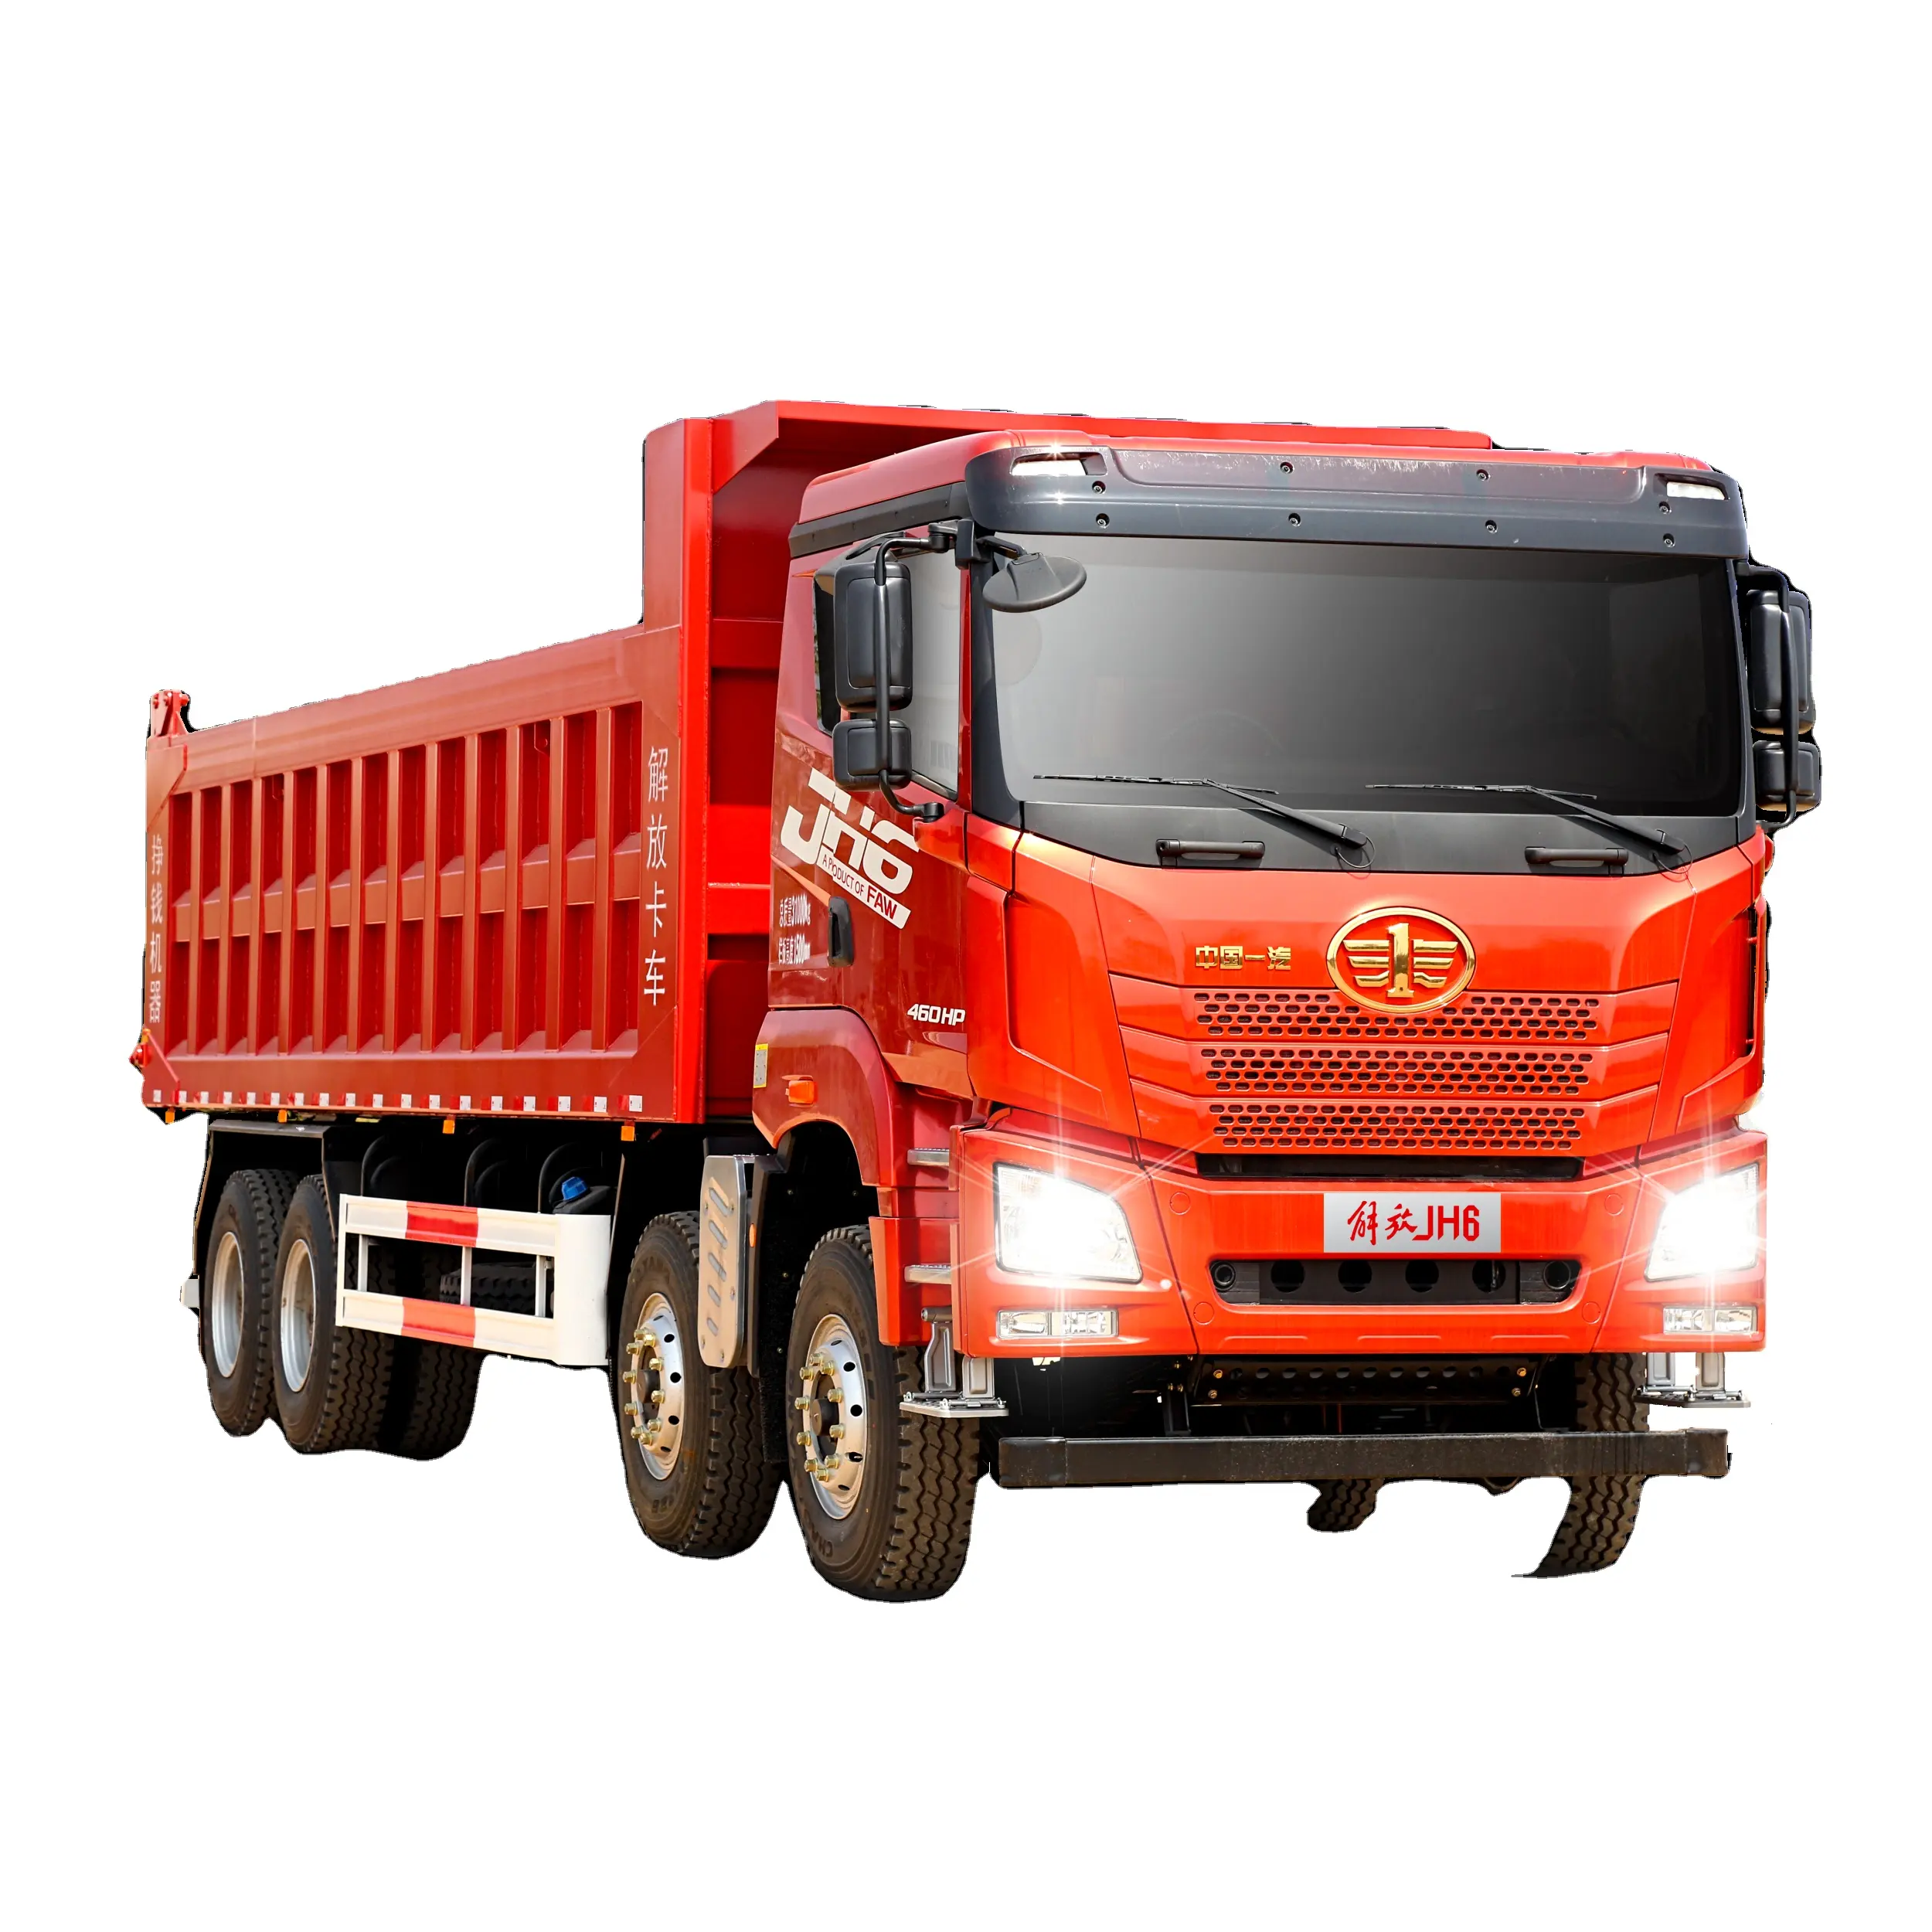 Factory Sells Faw Chinese Dump Truck 6X4 Jh6 420Hp Dump Truck